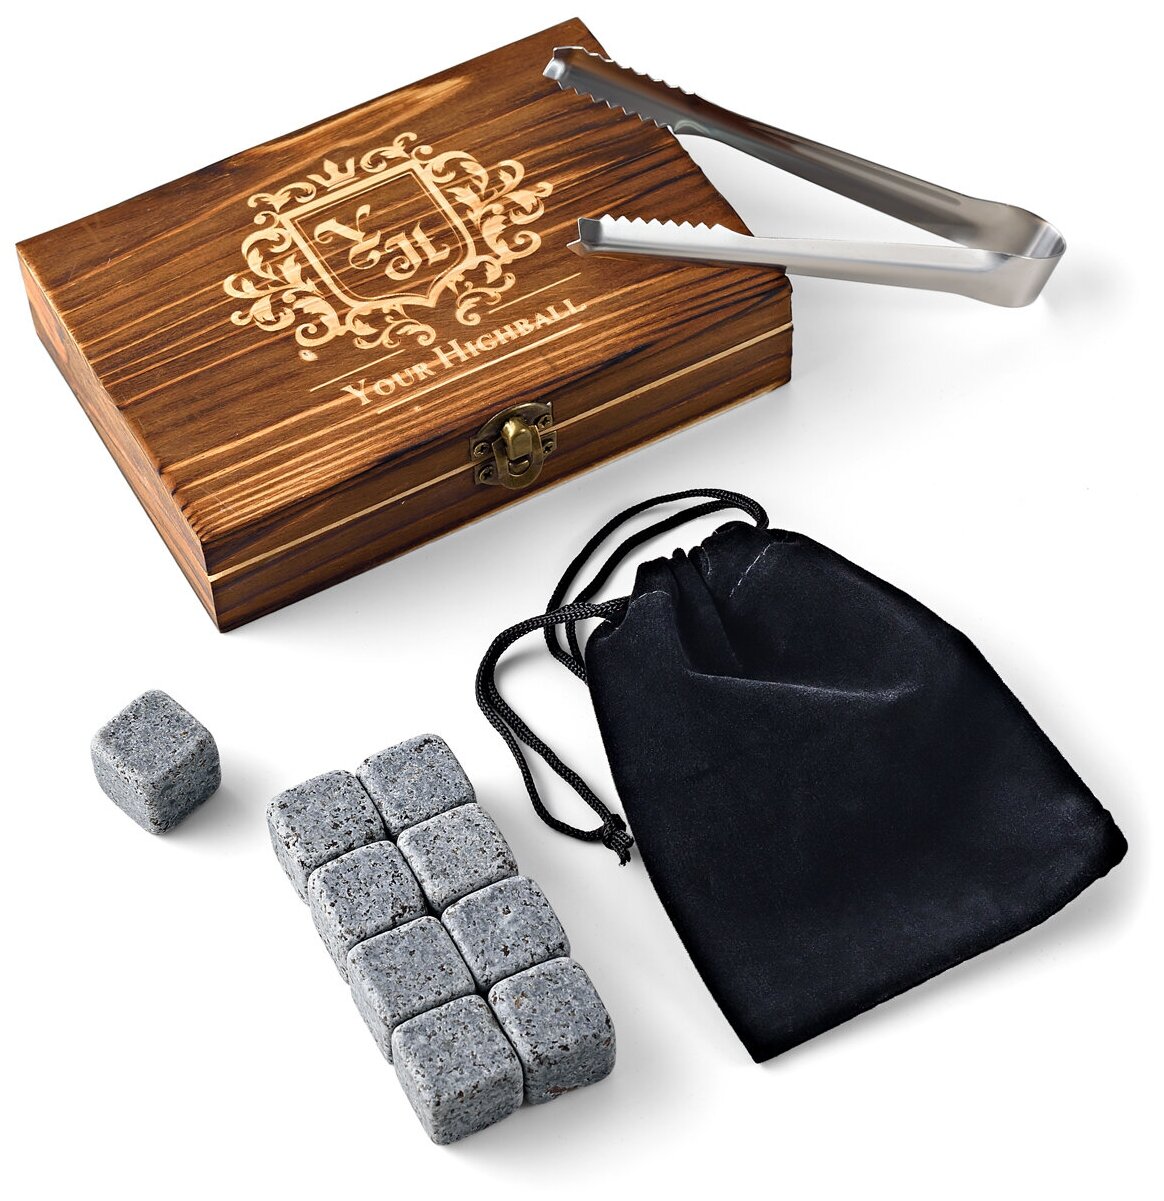 Охлаждающие камни для виски Your Highball Многоразовые кубики для охлаждения напитков Подарочный набор для виски с камнями